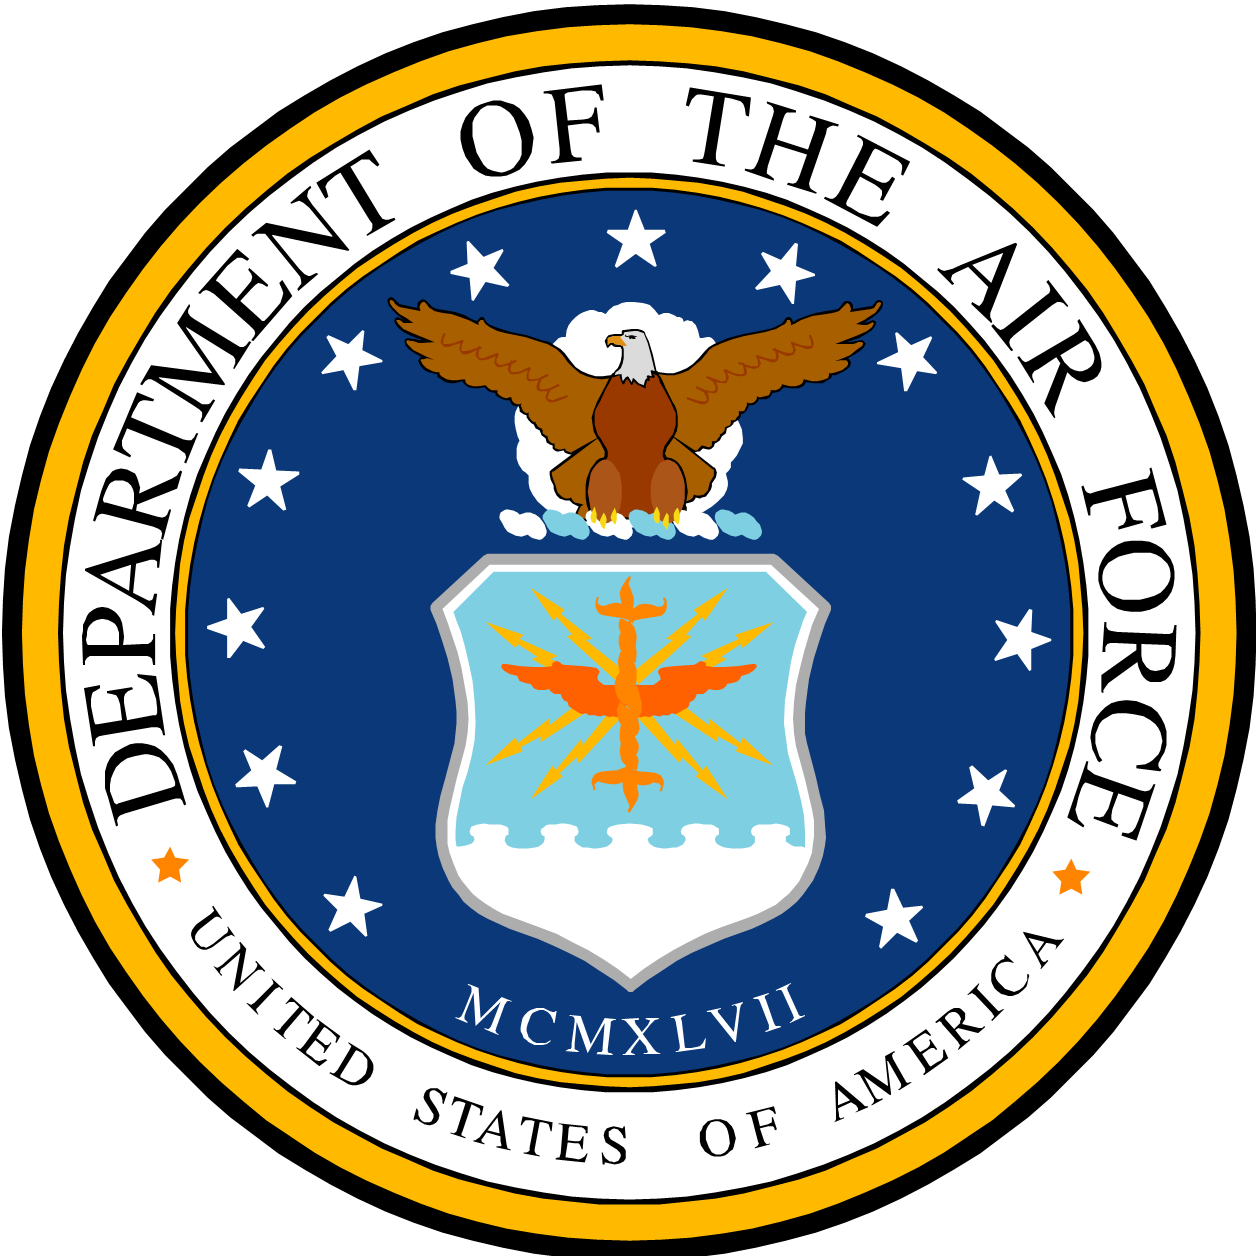 Air Force Logos Clip Art - ClipArt Best